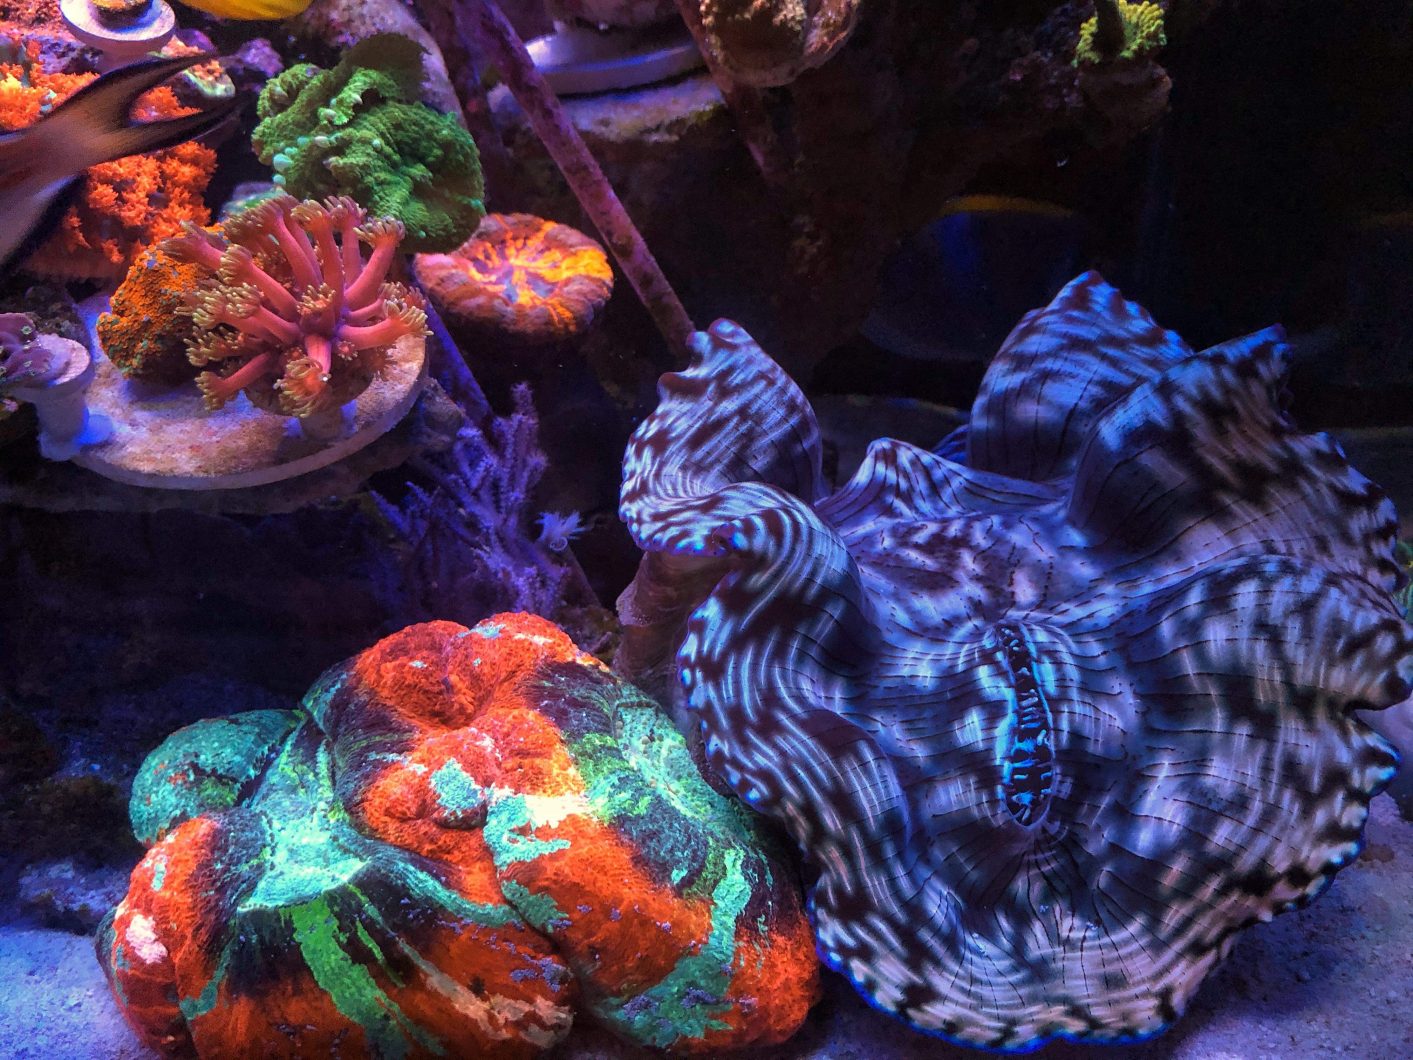 אלמוגים מתחת למסנן העדשות